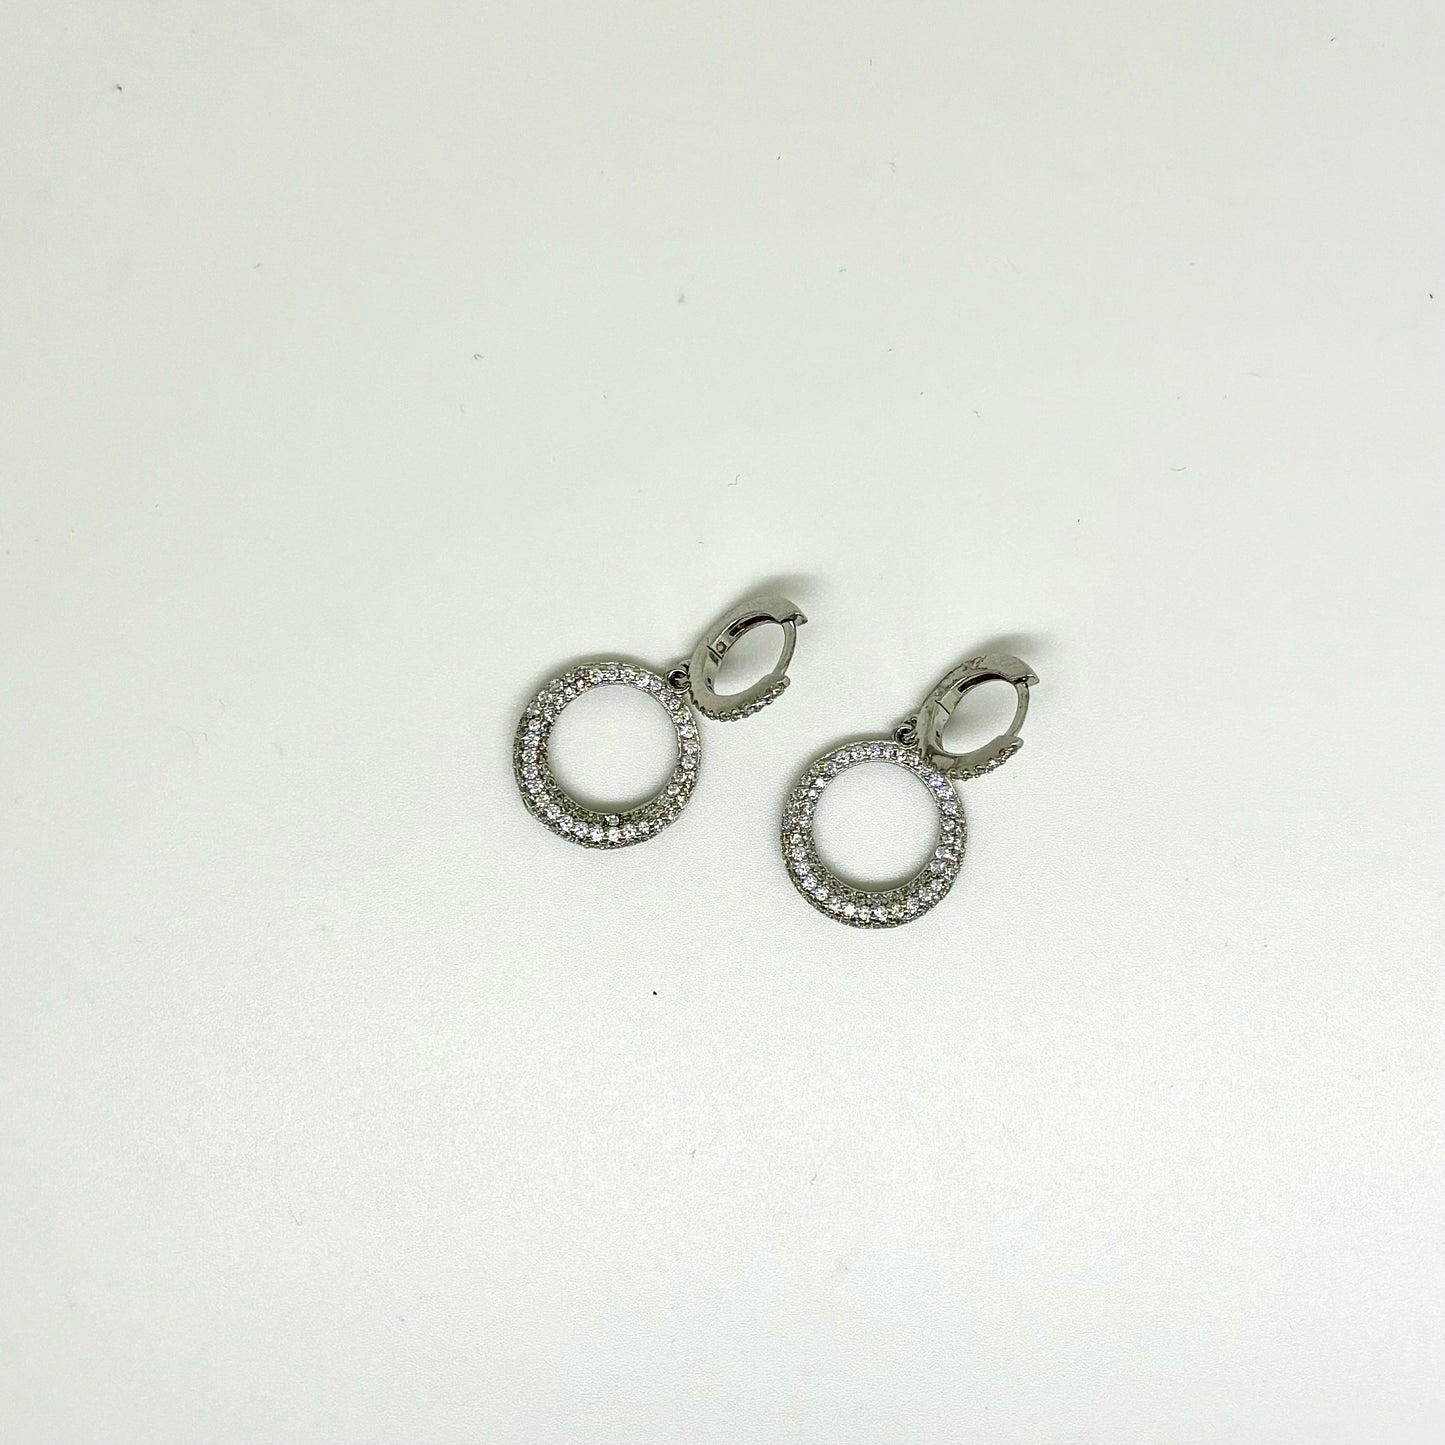 Cubic Zirconia Sterling Silver Earrings